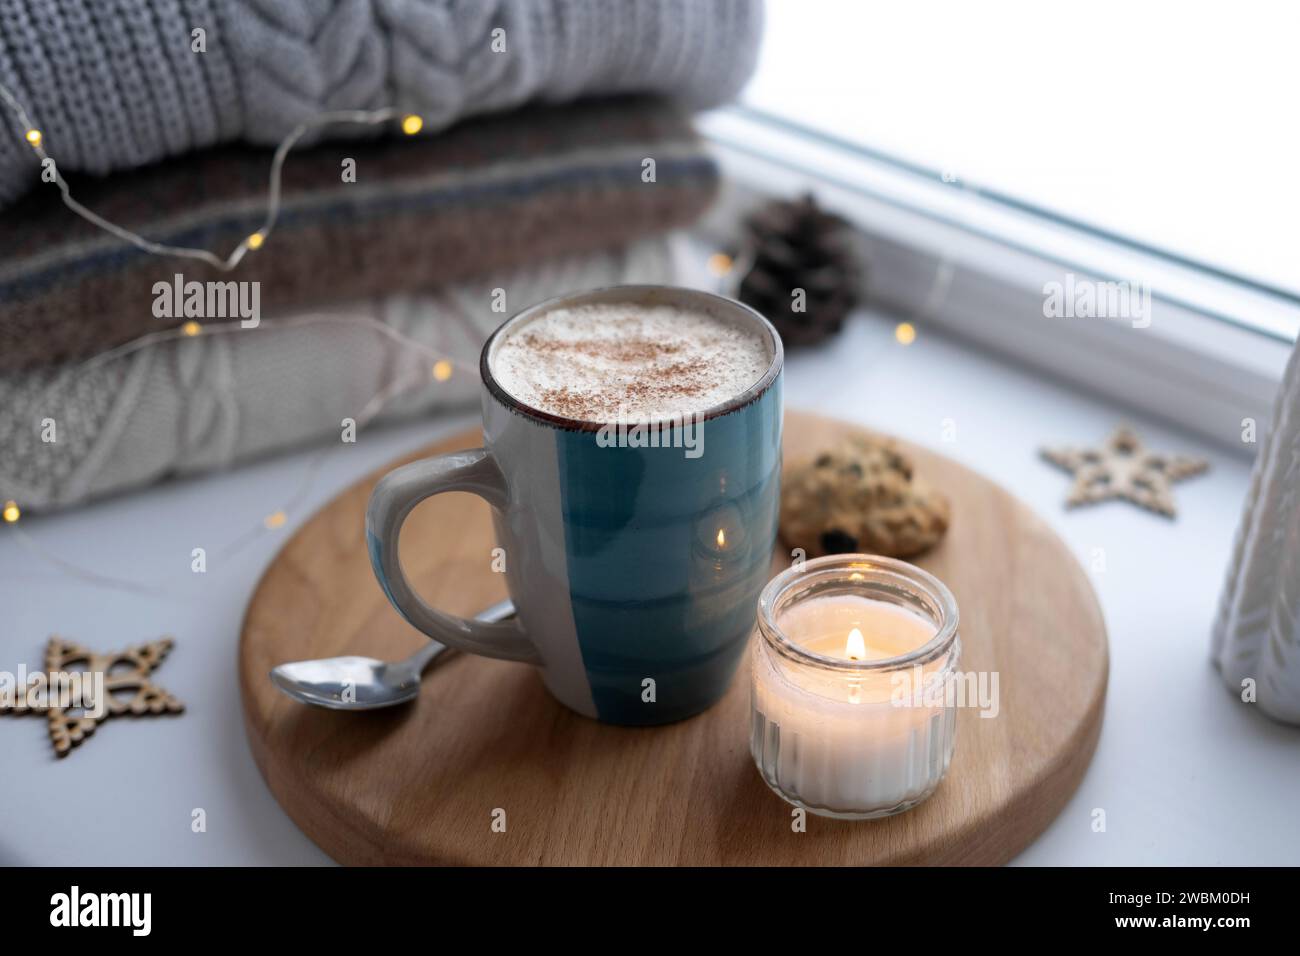 Nature morte de rebord de fenêtre d'hiver. Tasse en céramique bleue de café chaud sur le rebord de la fenêtre. Décorations de Noël sur le fond. Image de la maison confortable. Woolen k chaud Banque D'Images